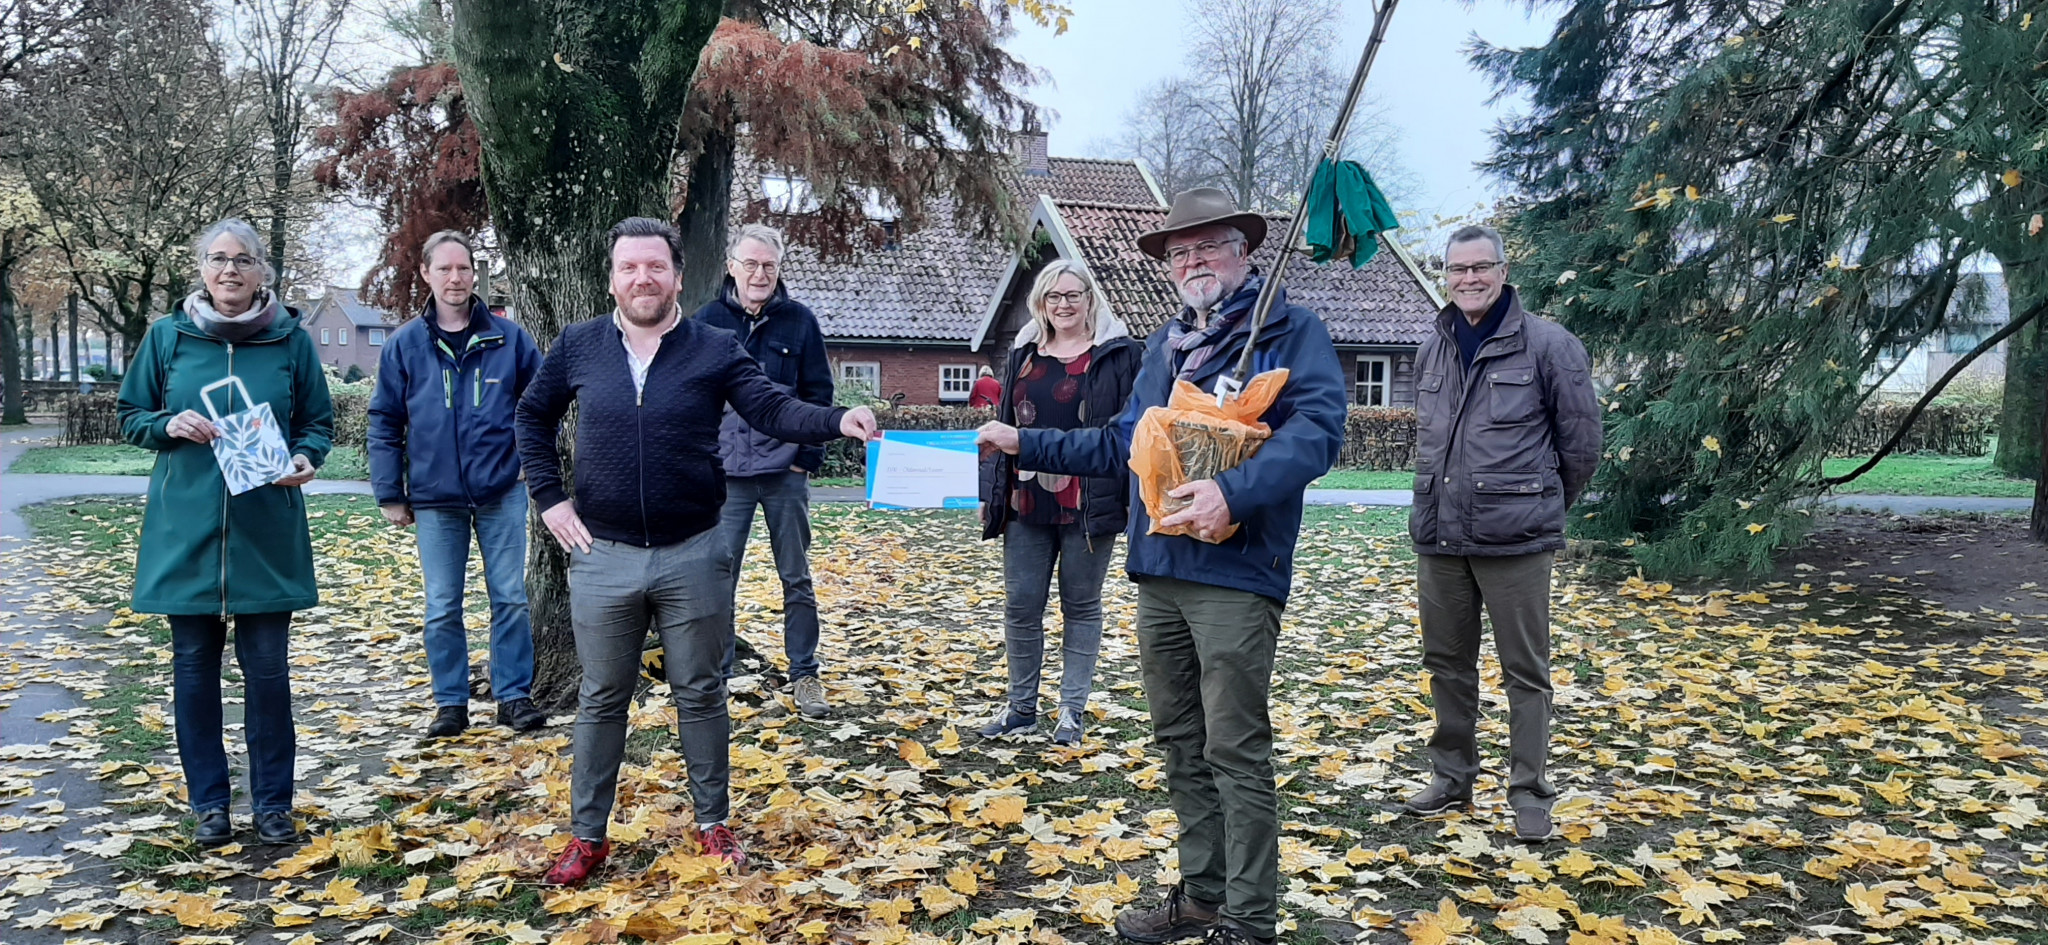 IVN Oldenzaal-Losser wint Groene Overijsselse Vrijwilligersprijs in gemeente Oldenzaal